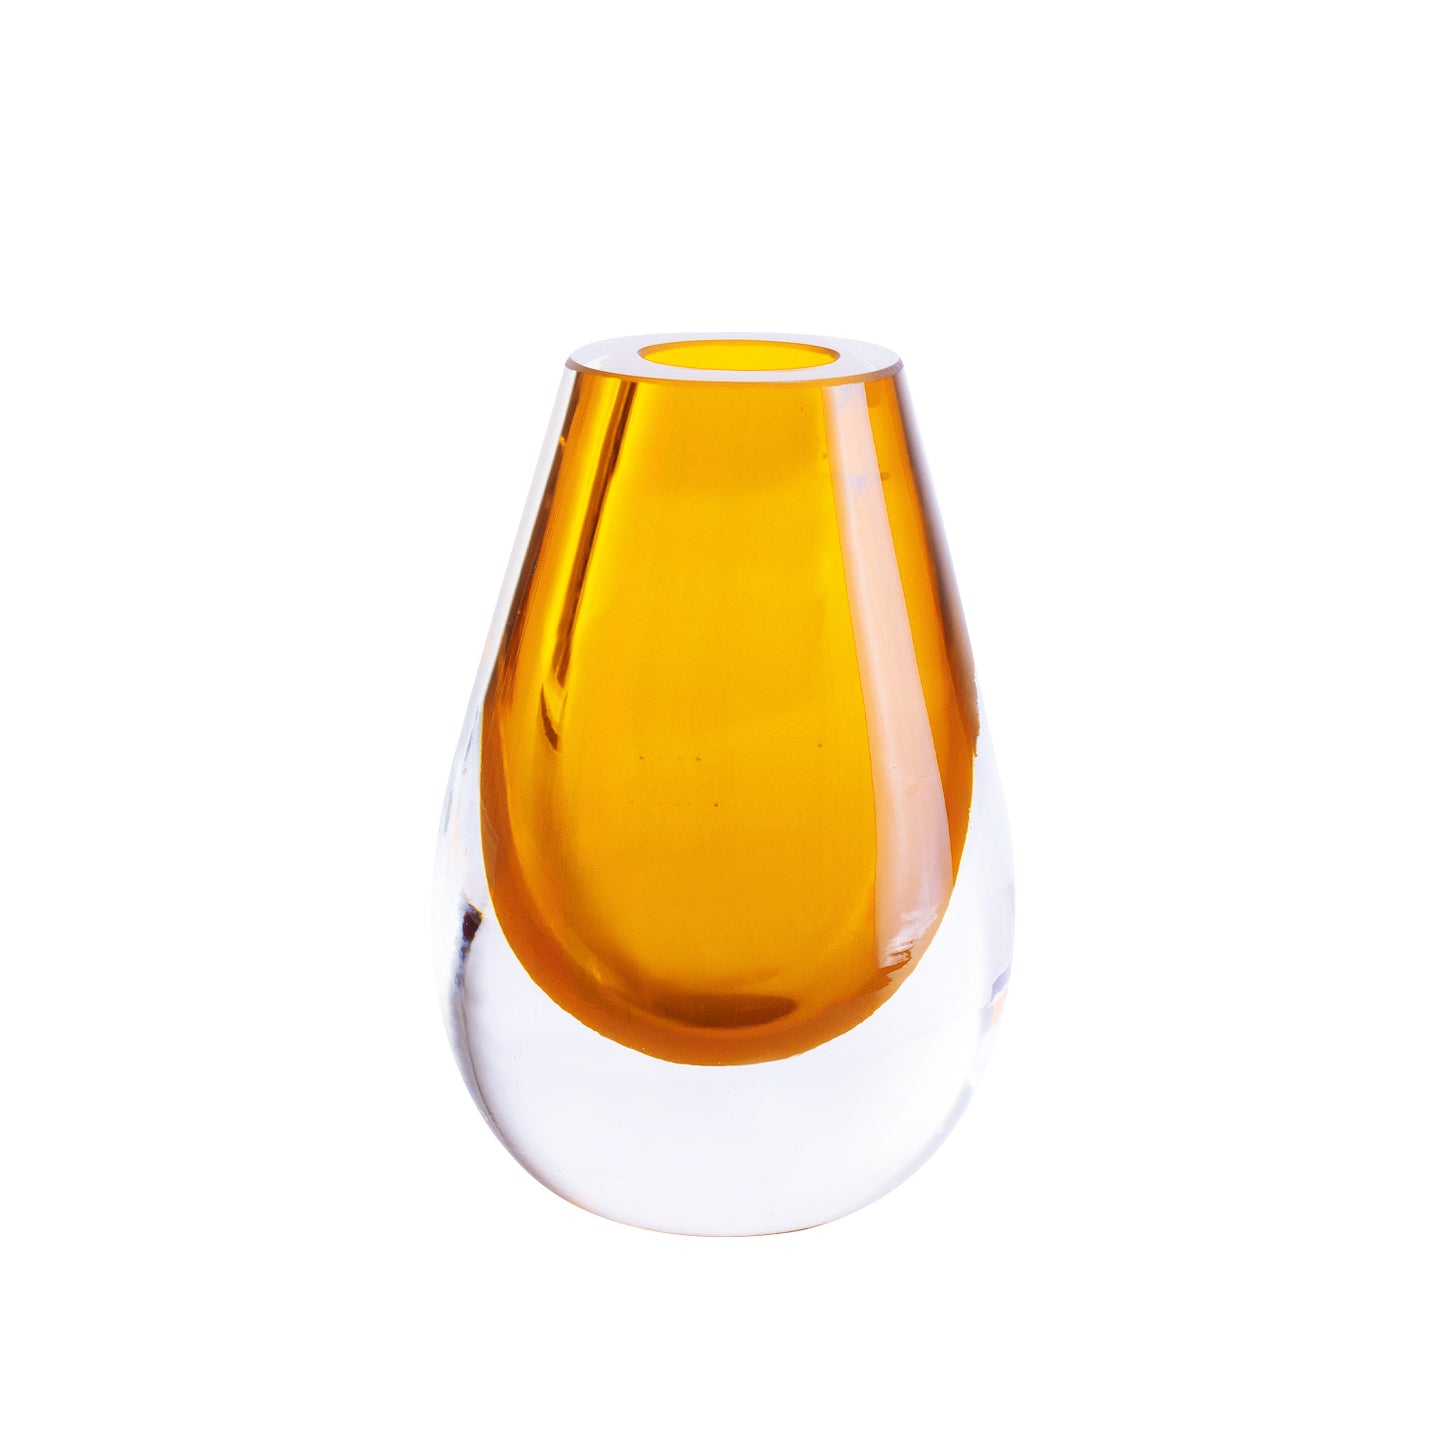 Tropfenförmige bernsteingelbe Vase – mundgeblasenes dickes Glas – umweltfreundliche Eleganz